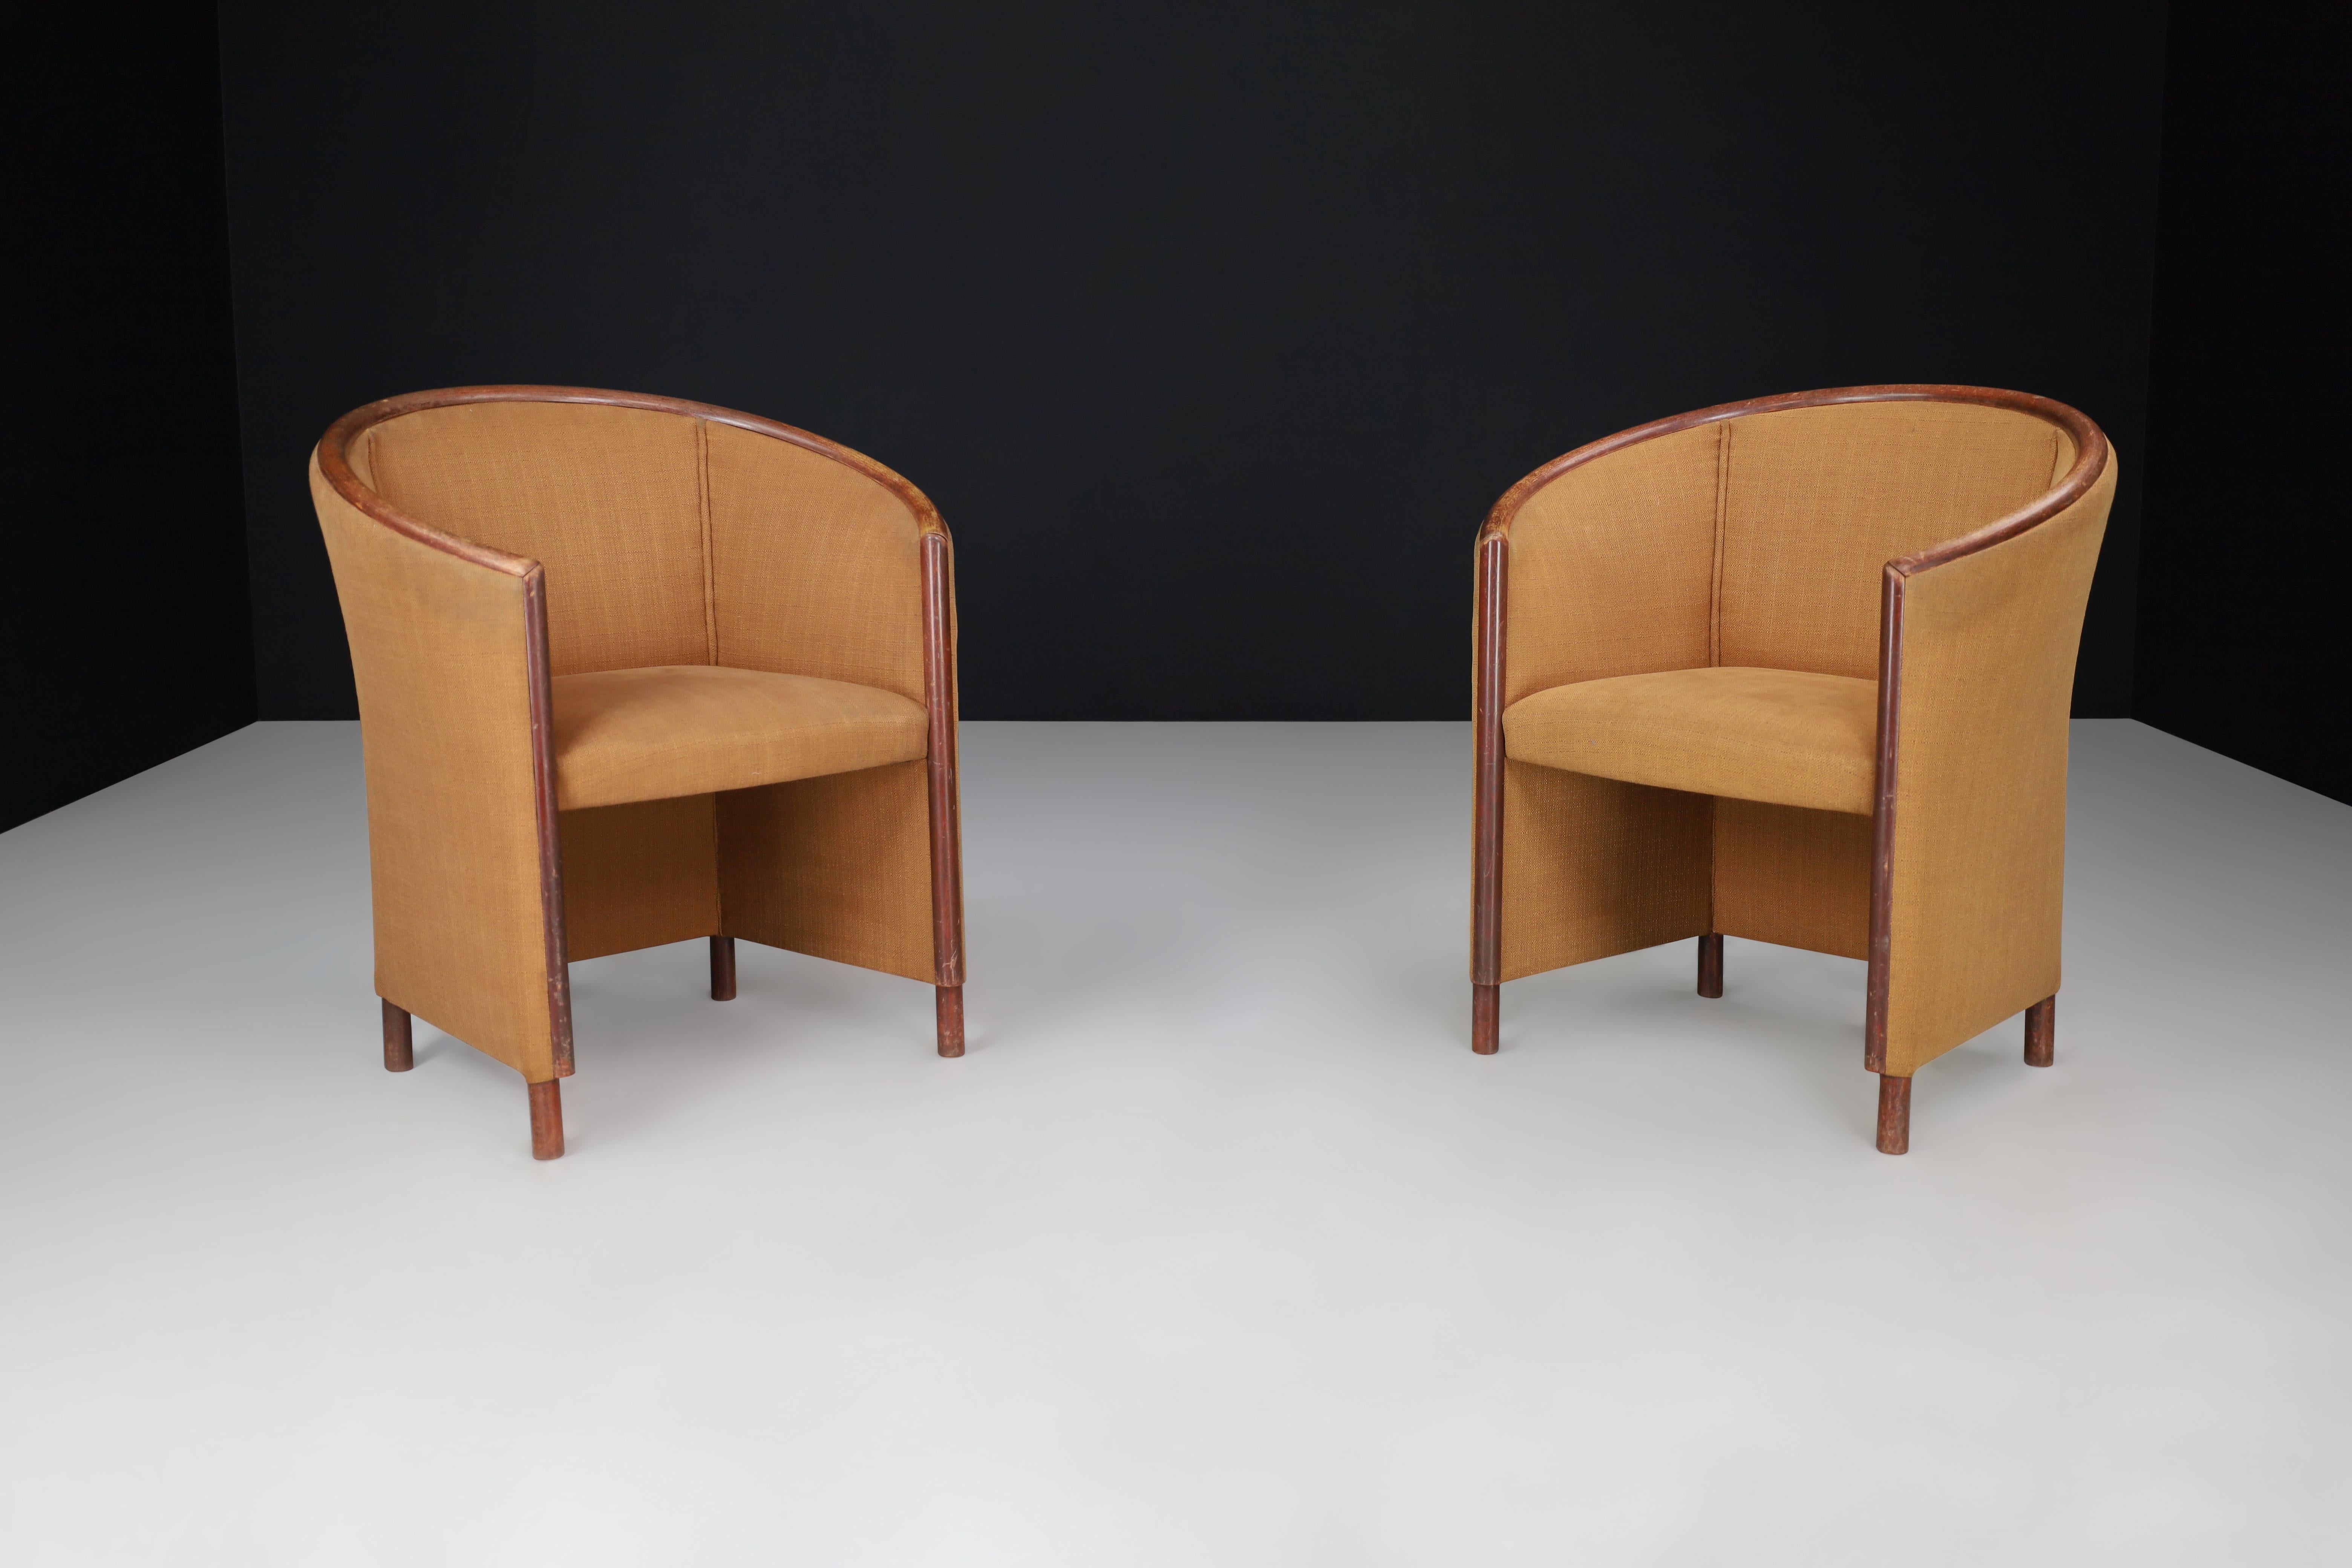 Ton Fauteuils ou chaises club en bentwood et tapisserie camel République Tchèque 1970

Eleg, en République tchèque, a fabriqué cet ensemble d'élégants fauteuils ou chaises club dans les années 1970. Les chaises sont dotées d'un magnifique cadre en